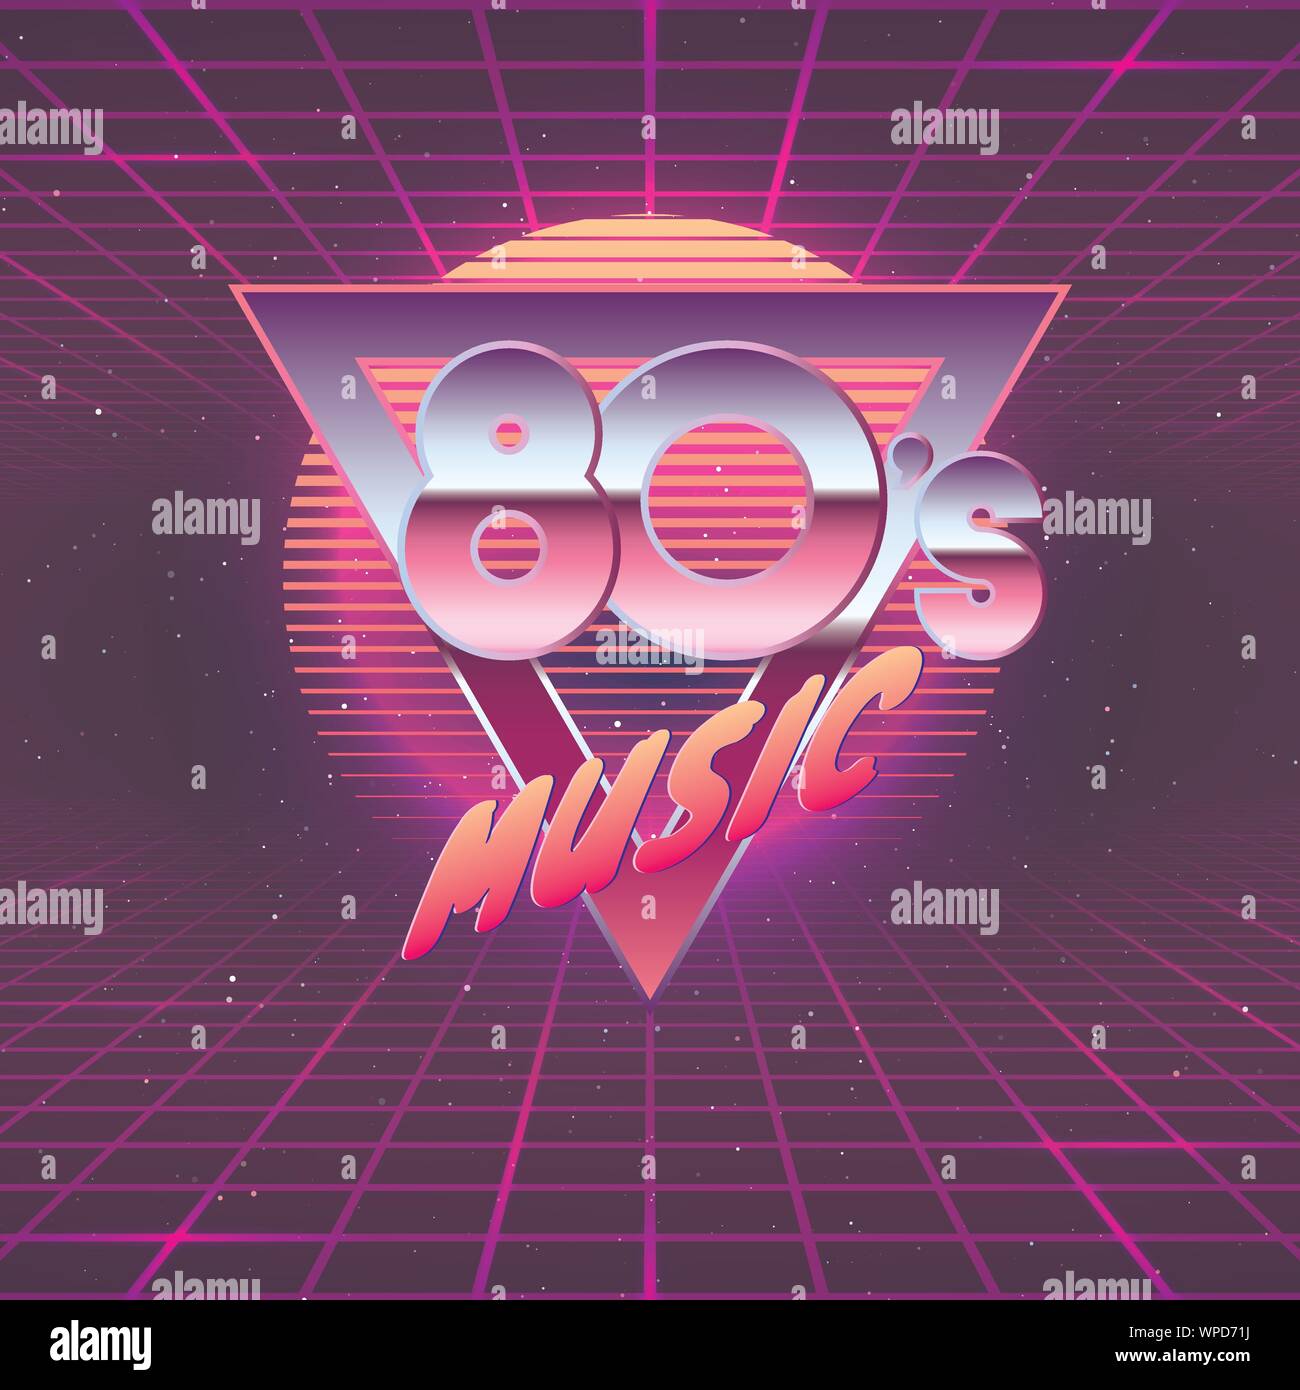 Paster Vorlage für Retro Party 80er. Neon Farben. Vintage elektronische Musik Flyer. Vector Illustration Stock Vektor